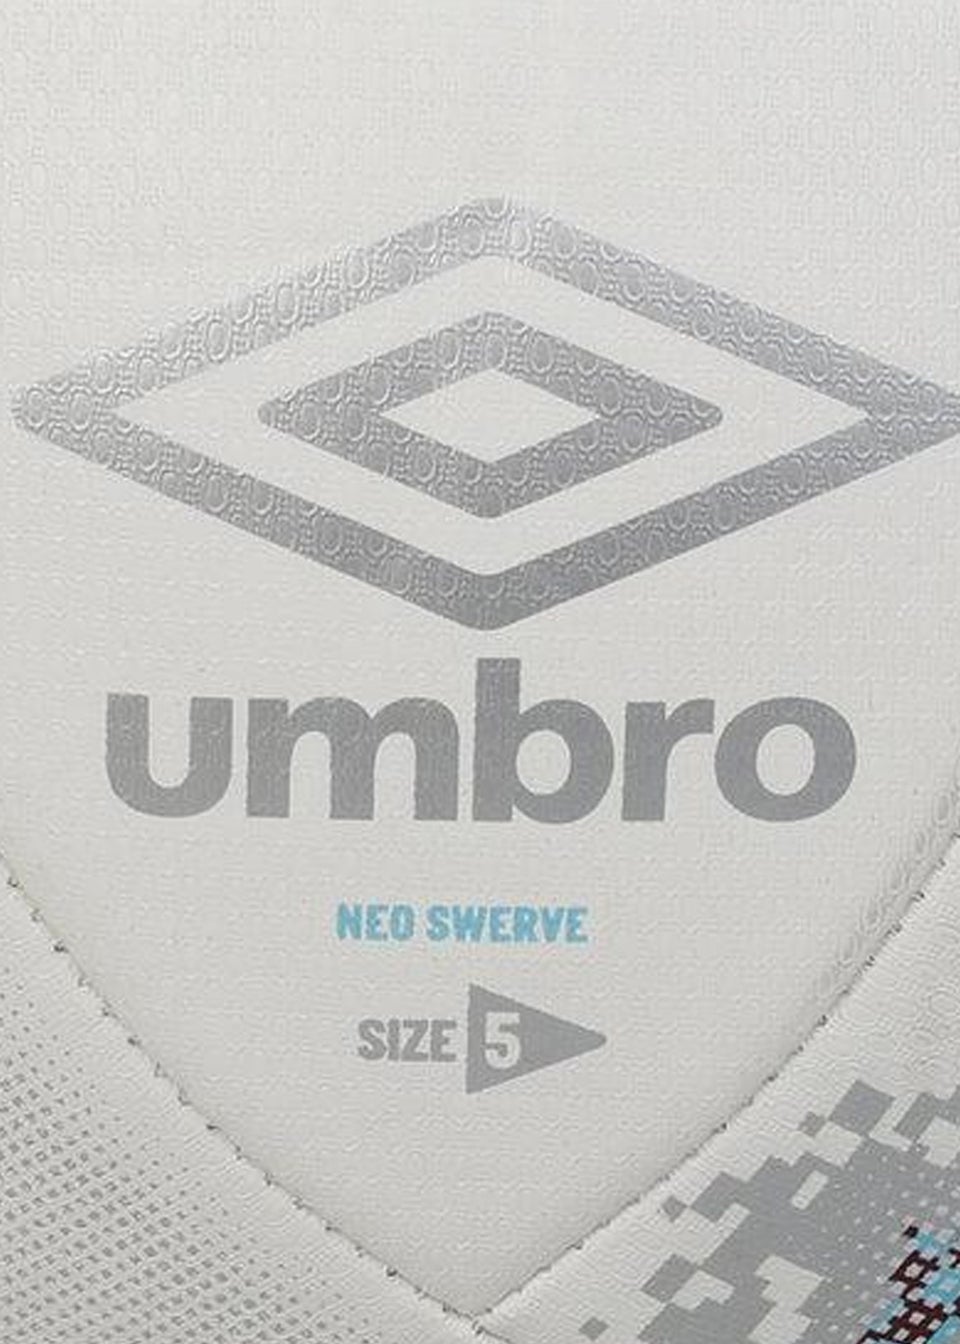 Umbro White/Grey Neo Swerve West Ham United FC Football